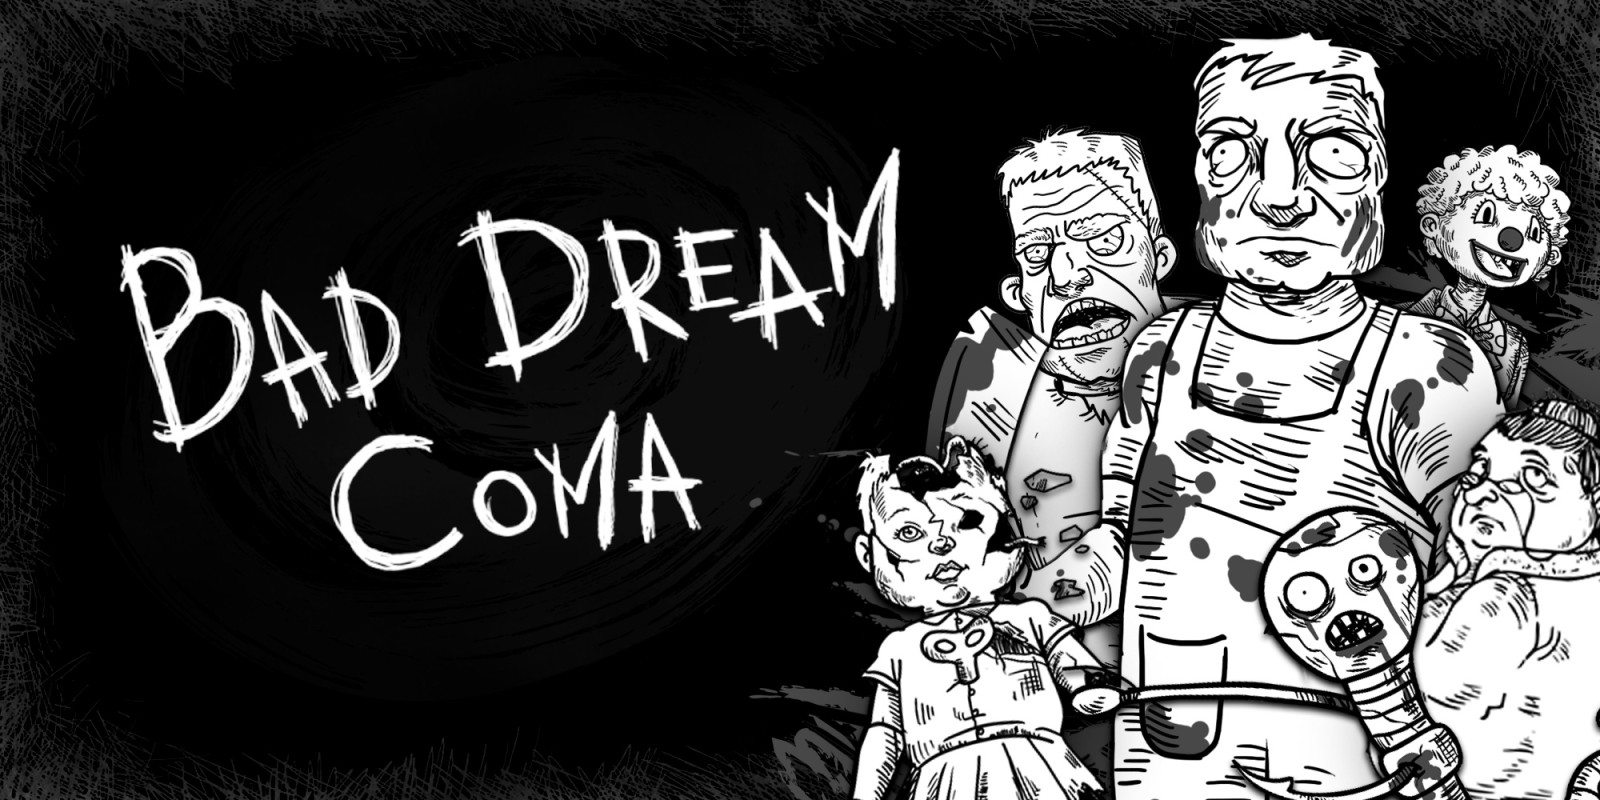 Bad dream coma steam фото 34